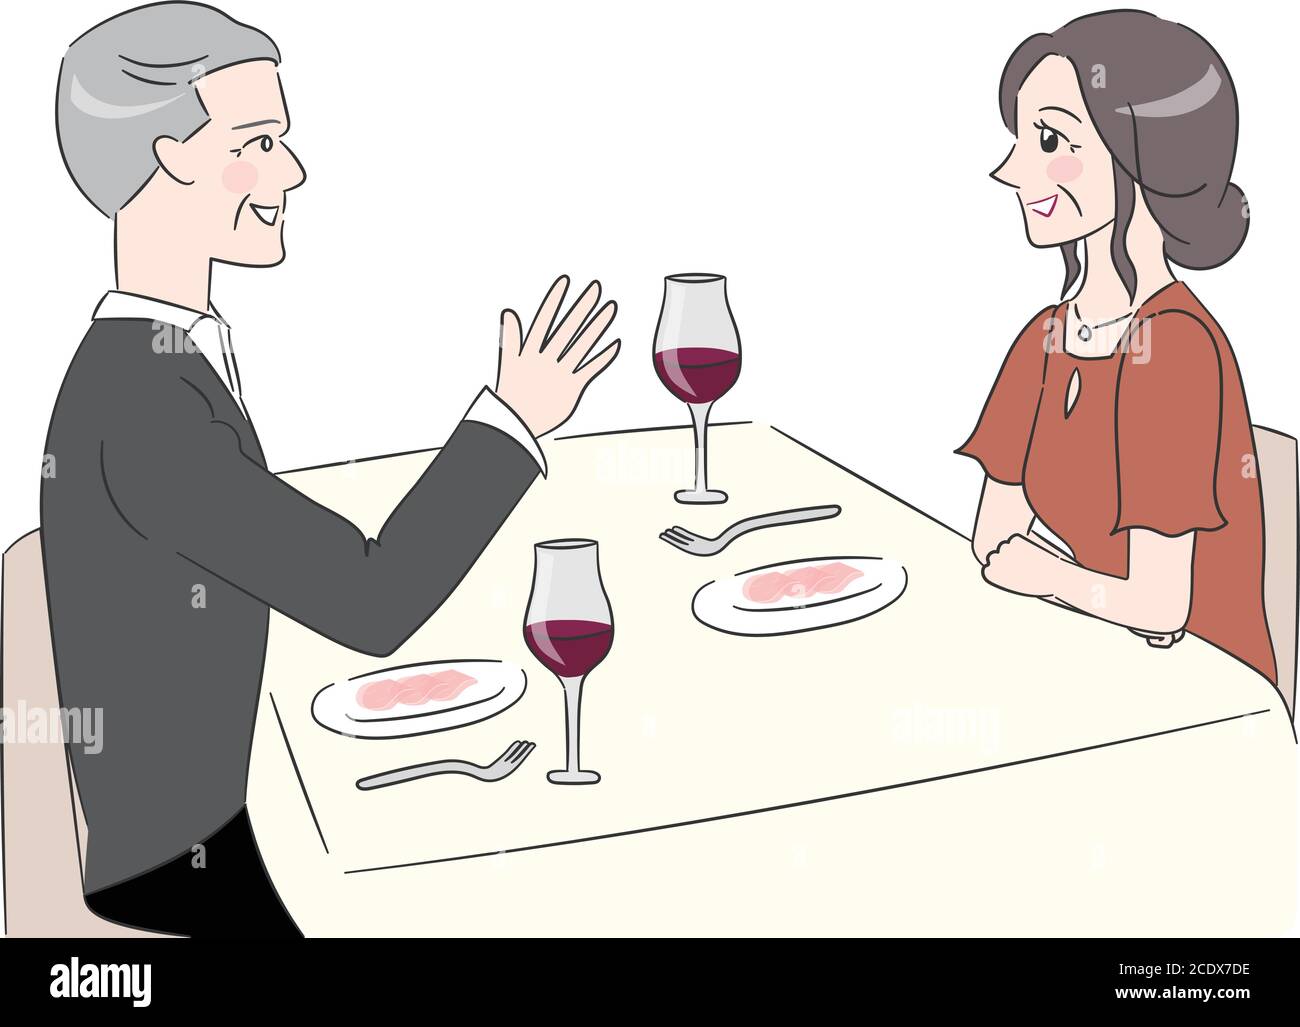 Ein Paar, das ein Date im Restaurant hat. Vektorgrafik isoliert auf weißem Hintergrund. Stock Vektor